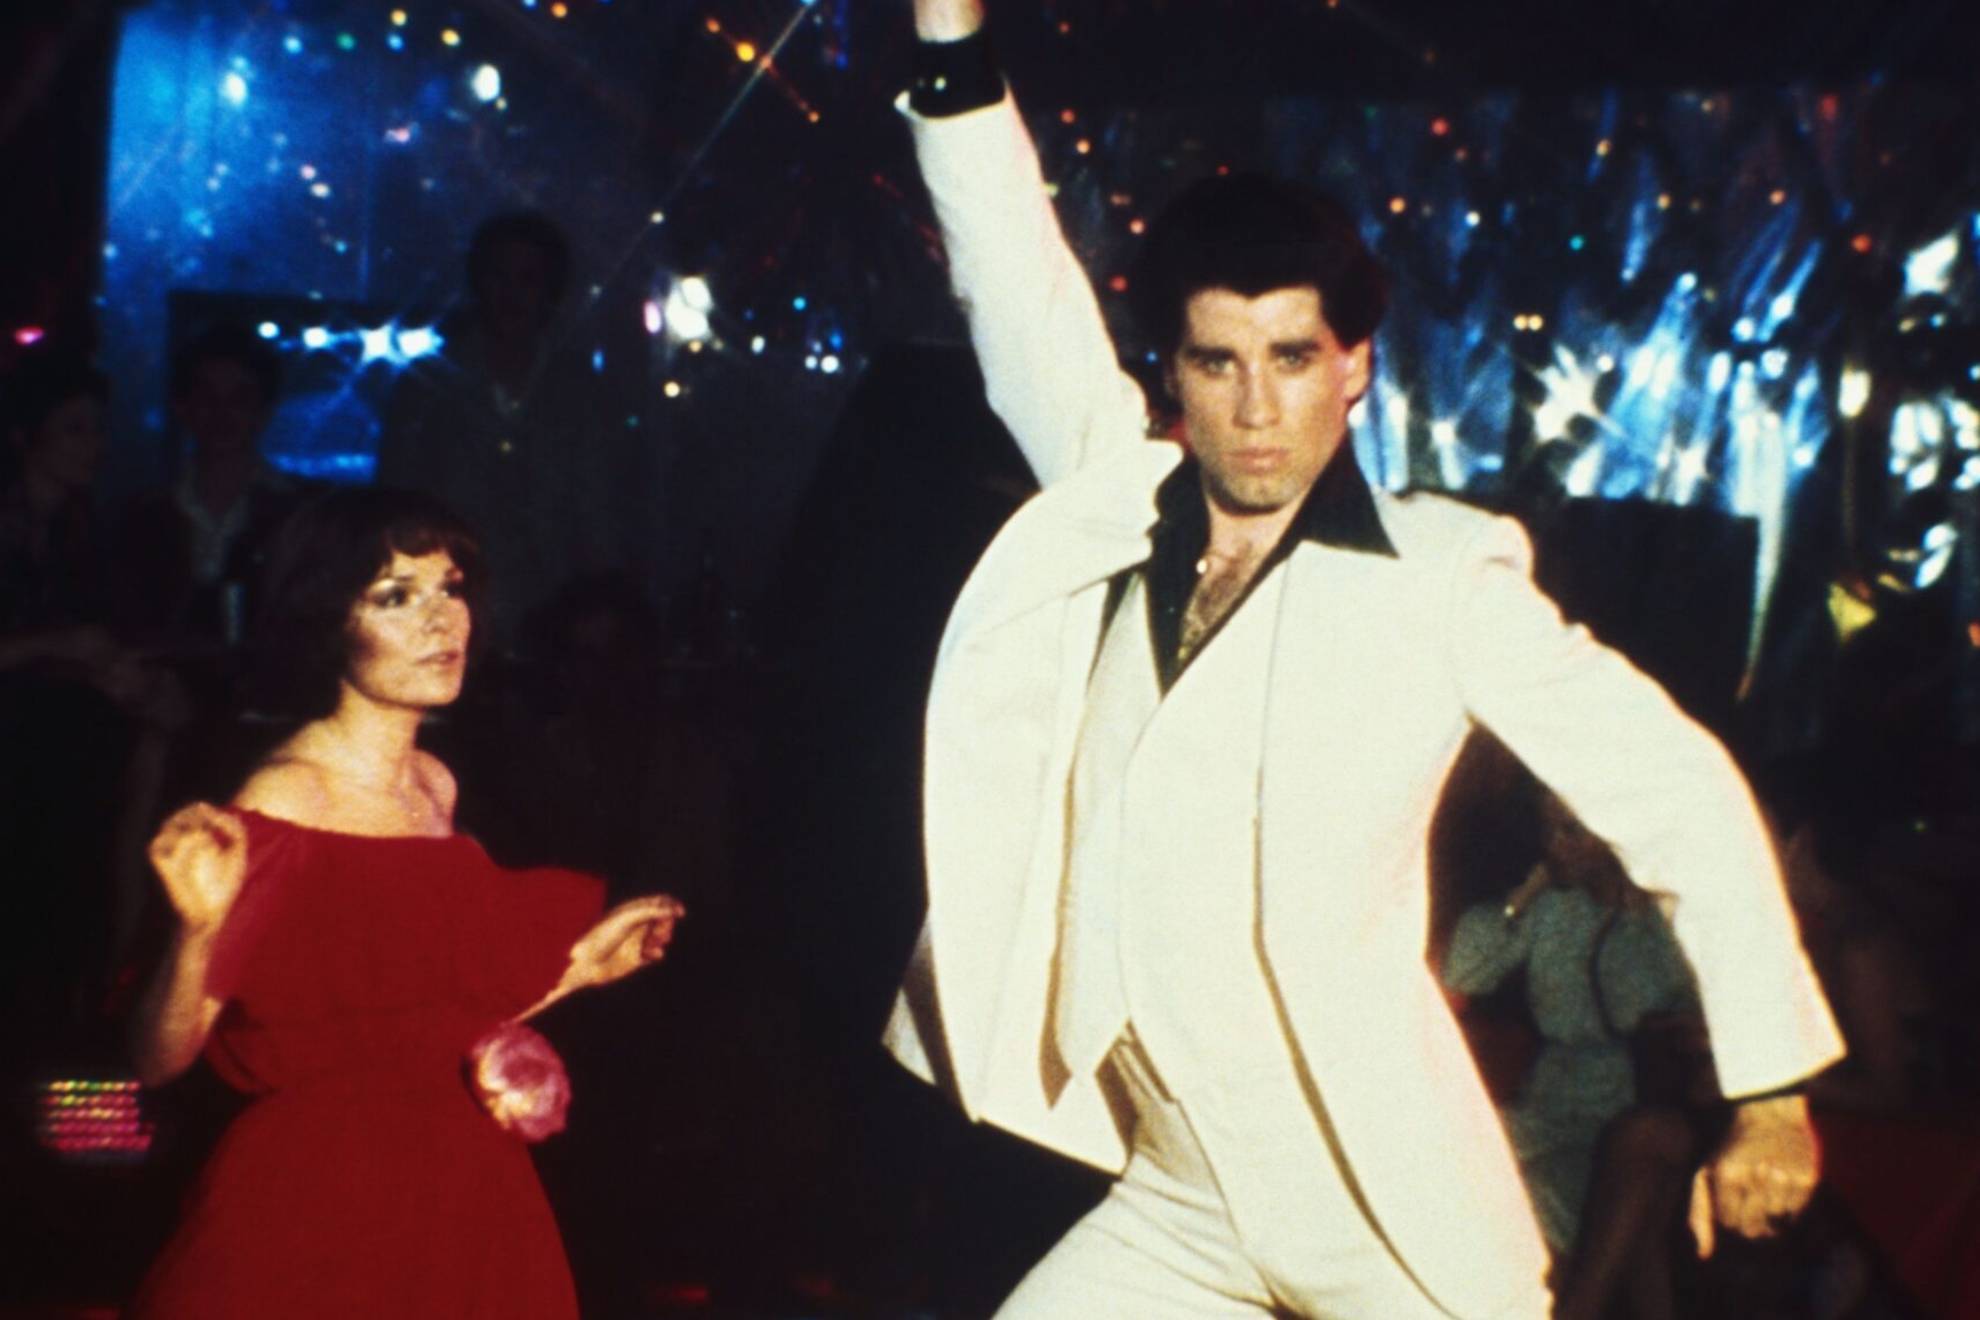 Subastan por 260.000 dólares el traje de John Travolta en 'Fiebre del sábado noche'